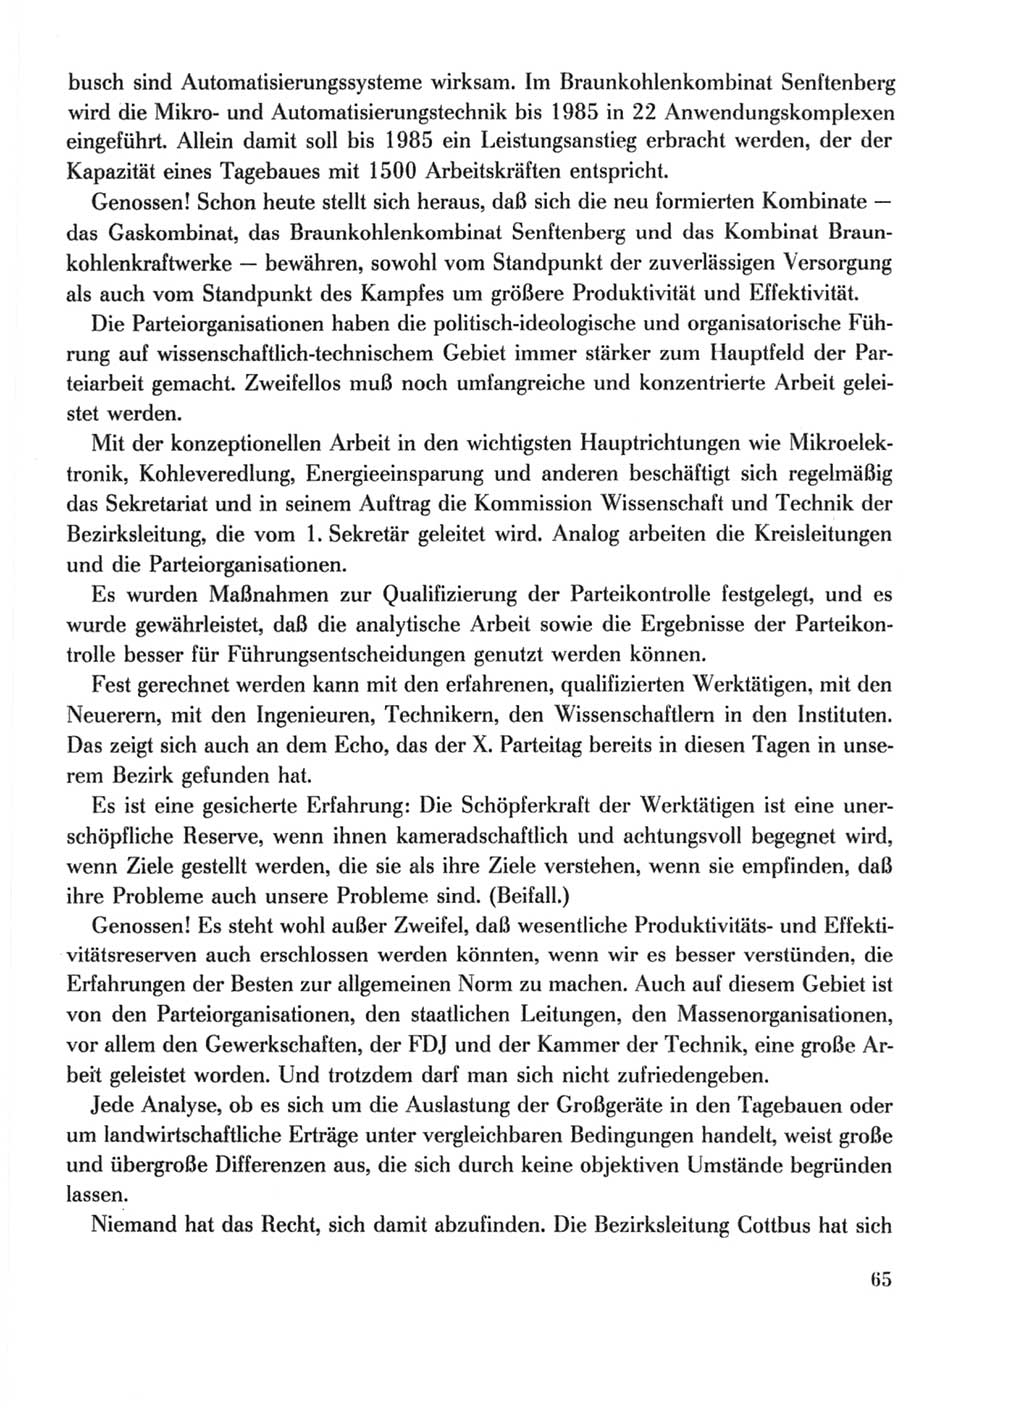 Protokoll der Verhandlungen des Ⅹ. Parteitages der Sozialistischen Einheitspartei Deutschlands (SED) [Deutsche Demokratische Republik (DDR)] 1981, Band 2, Seite 65 (Prot. Verh. Ⅹ. PT SED DDR 1981, Bd. 2, S. 65)